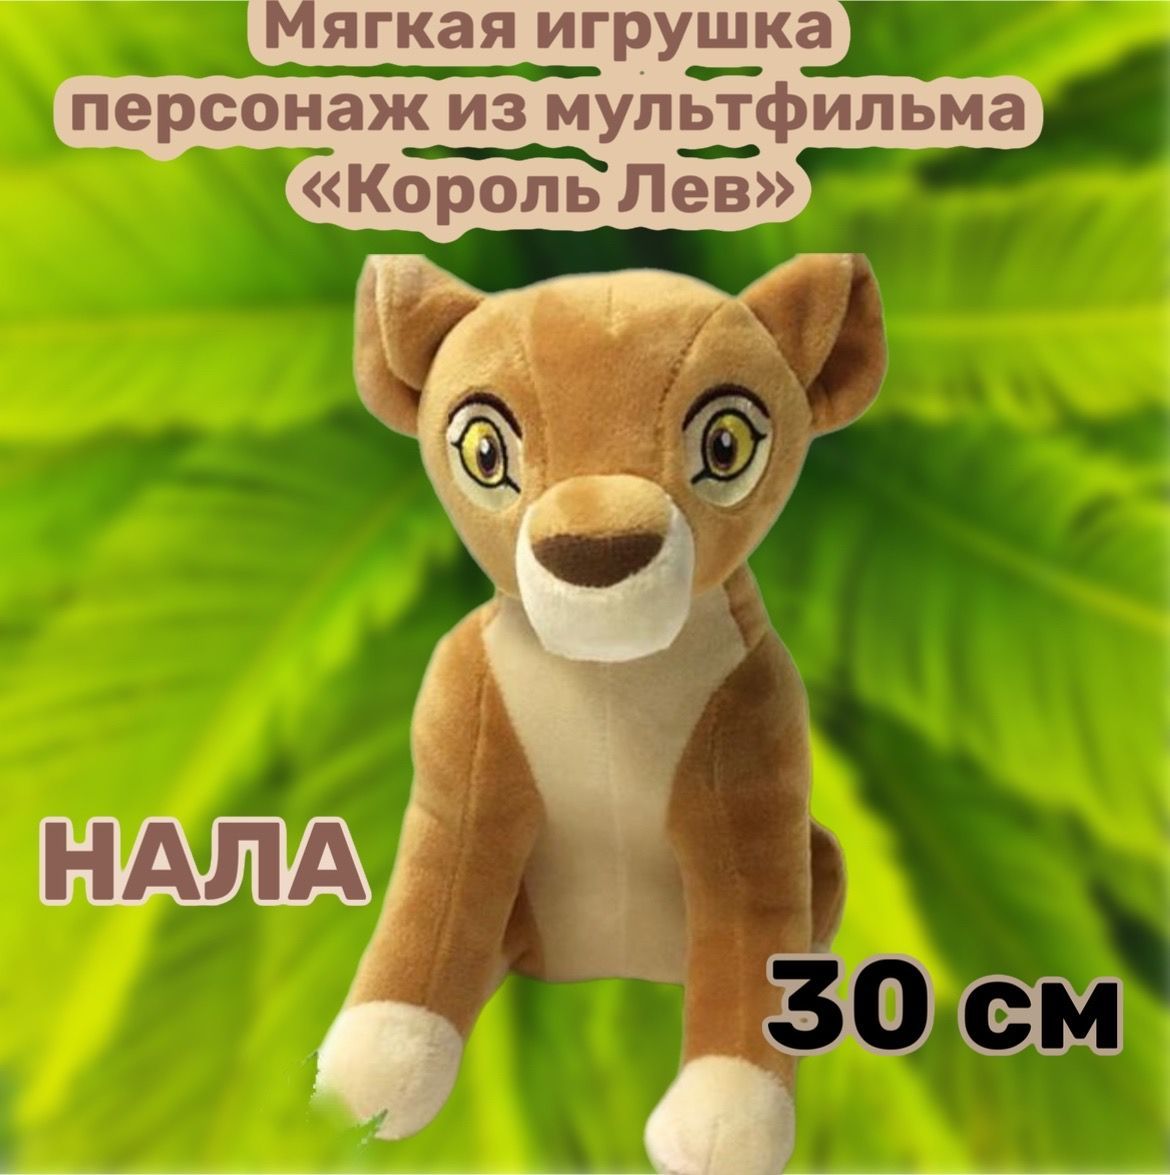 Фото из альбома «Король лев» на Яндекс.Диске